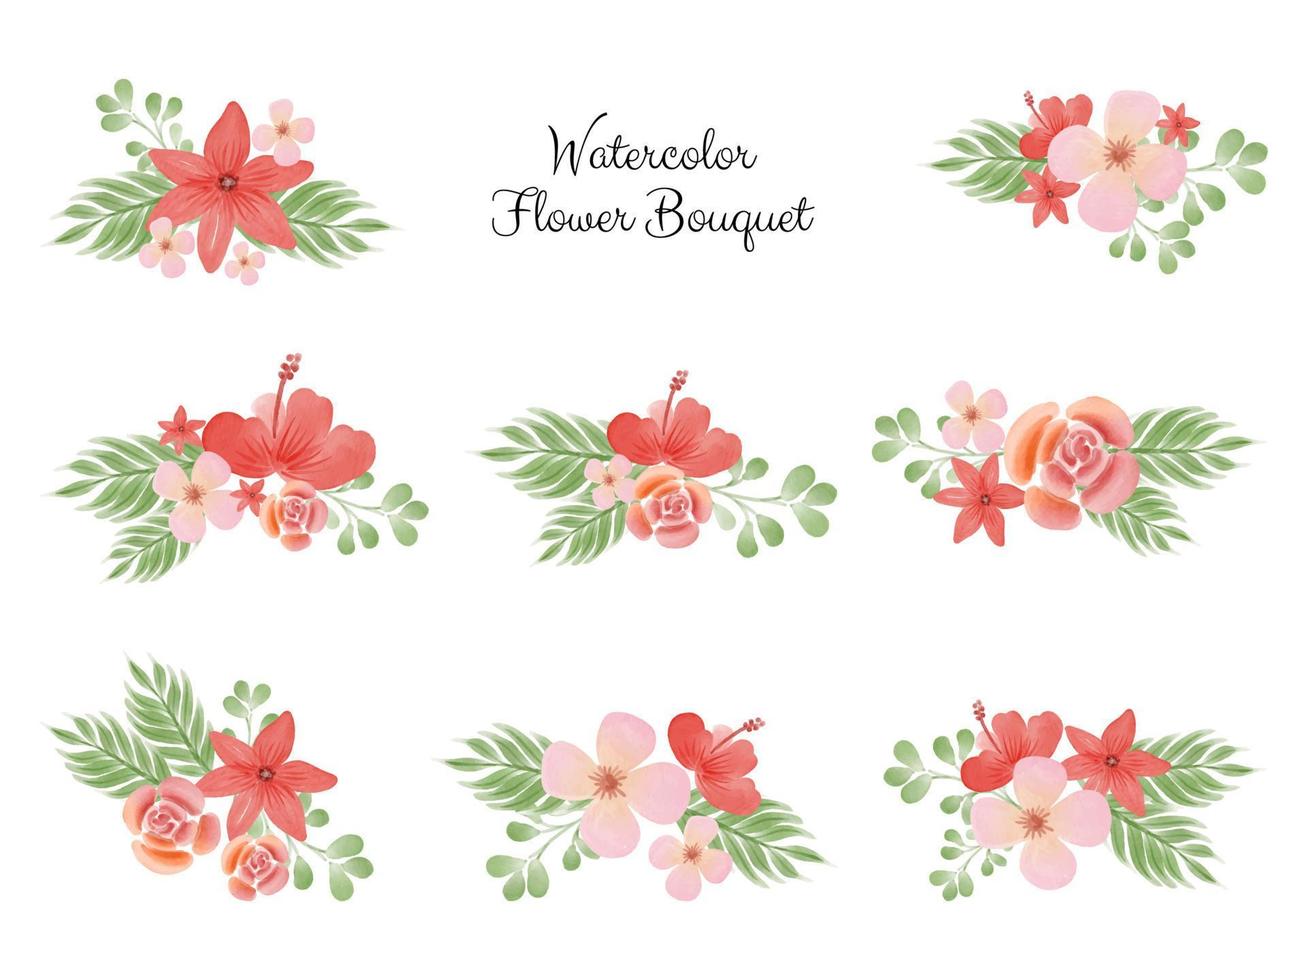 collezione vettoriale di bouquet di fiori ad acquerello per invito a nozze